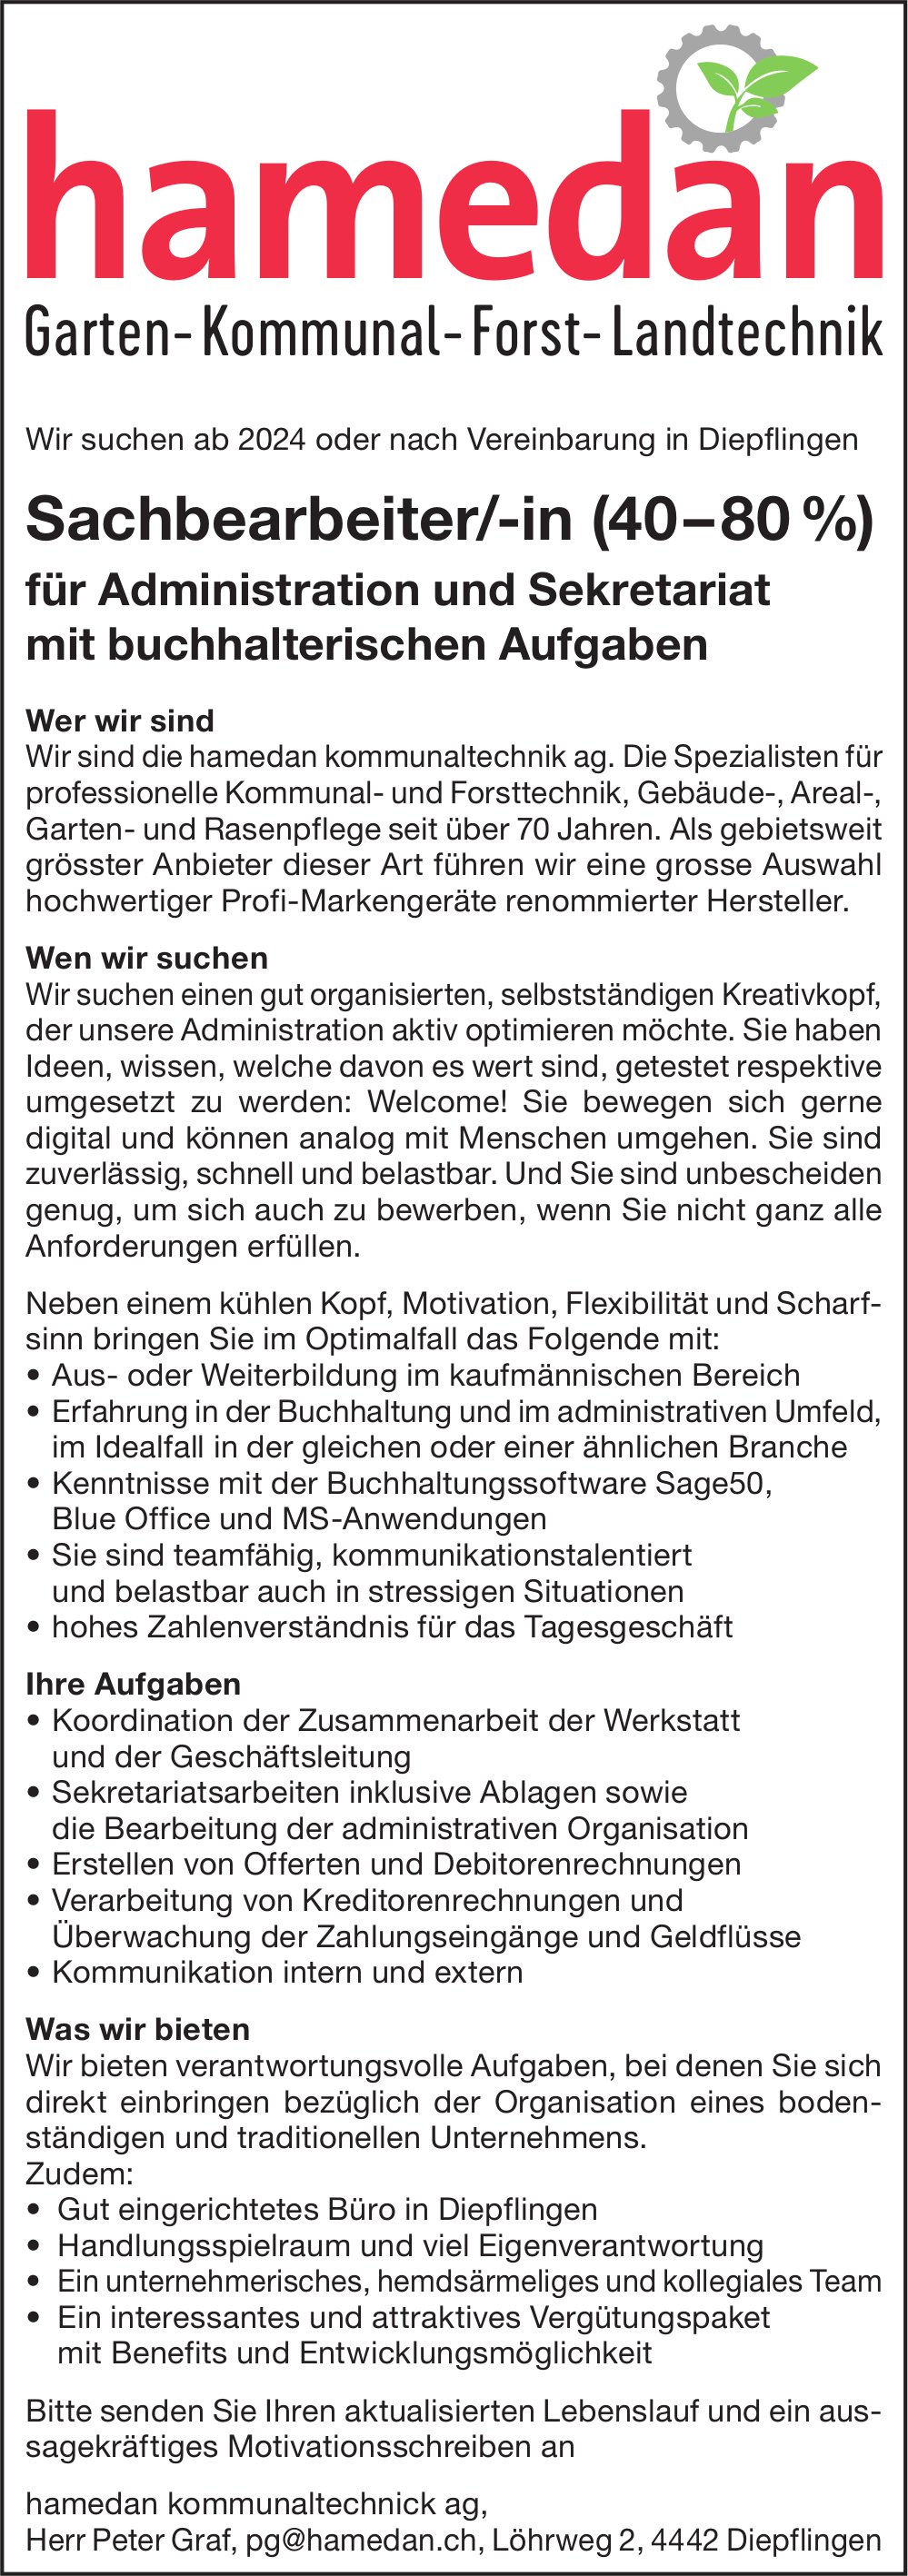 Sachbearbeiter/-in (40–80 %) Administration/Sekretariat, Hamedan Kommunaltechnick AG, Diepflingen, gesucht